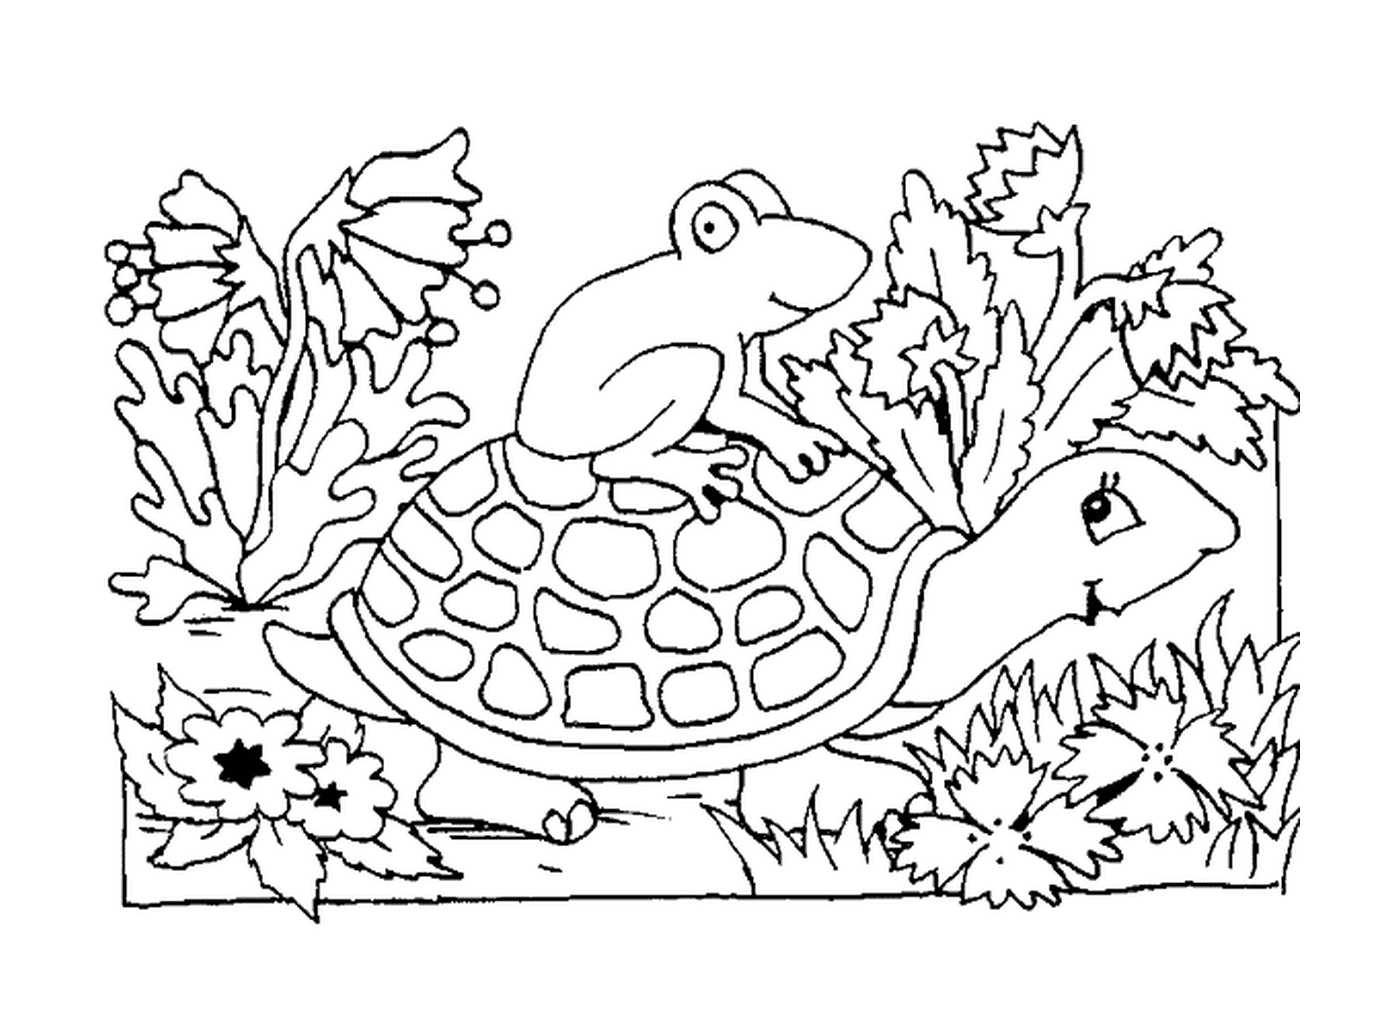  Rana en la caparazón de la tortuga 